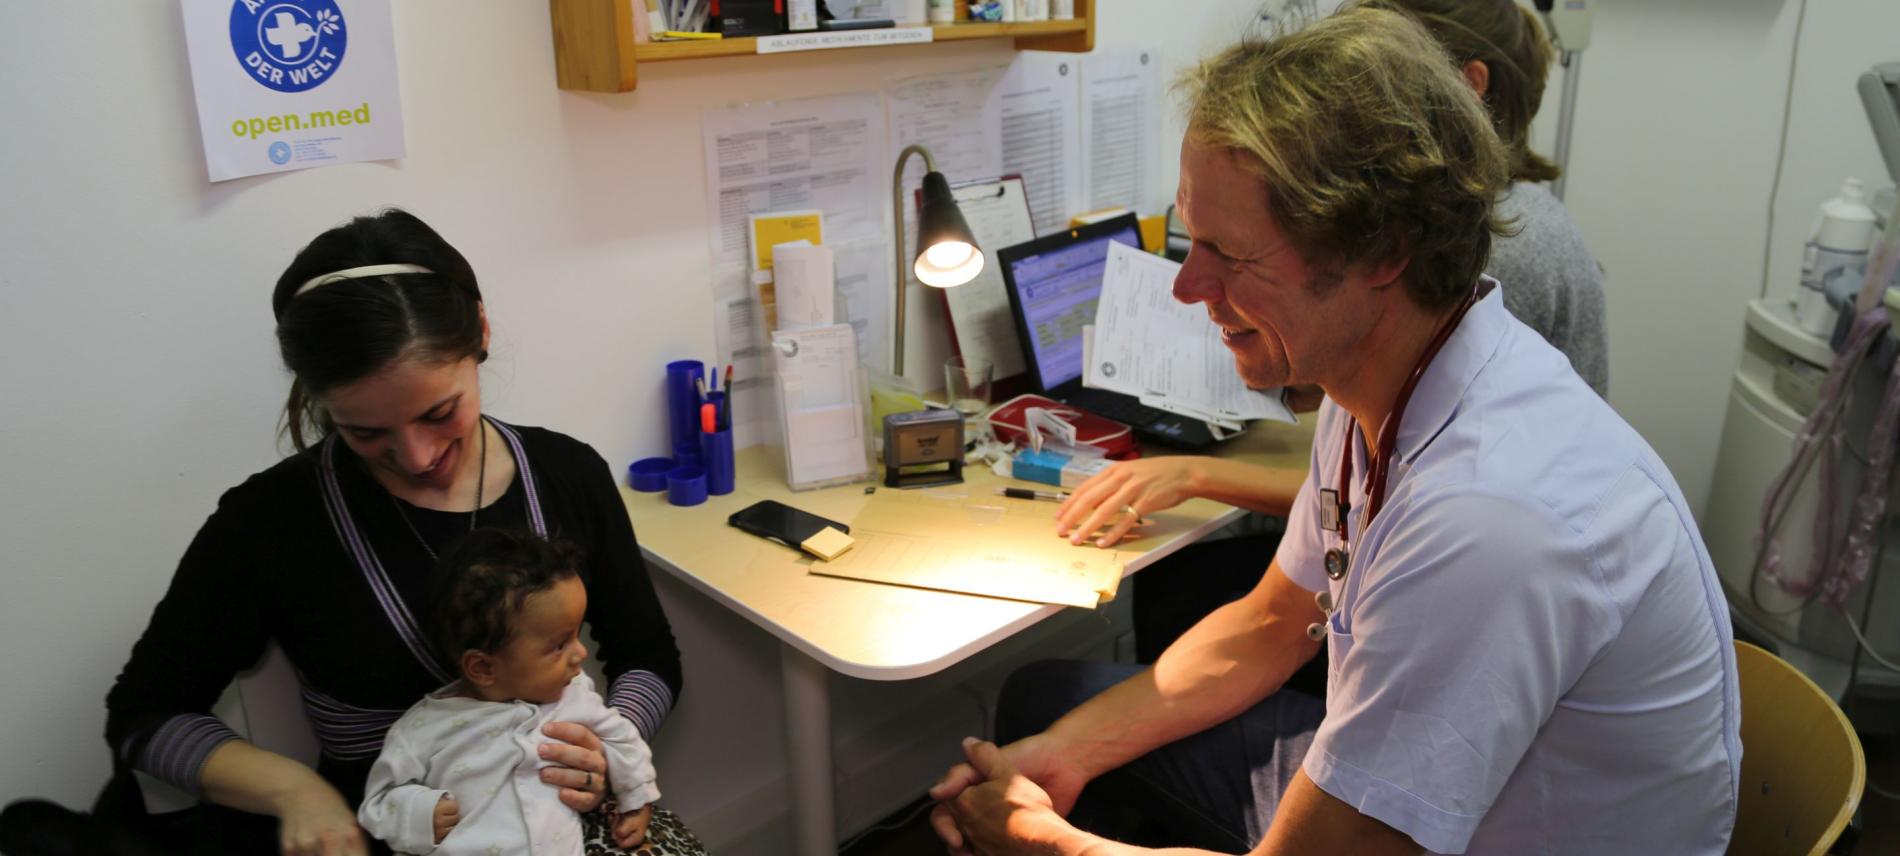 Arzt untersucht Kind in der open.med-Sprechstunde. Foto: Mike Yousaf